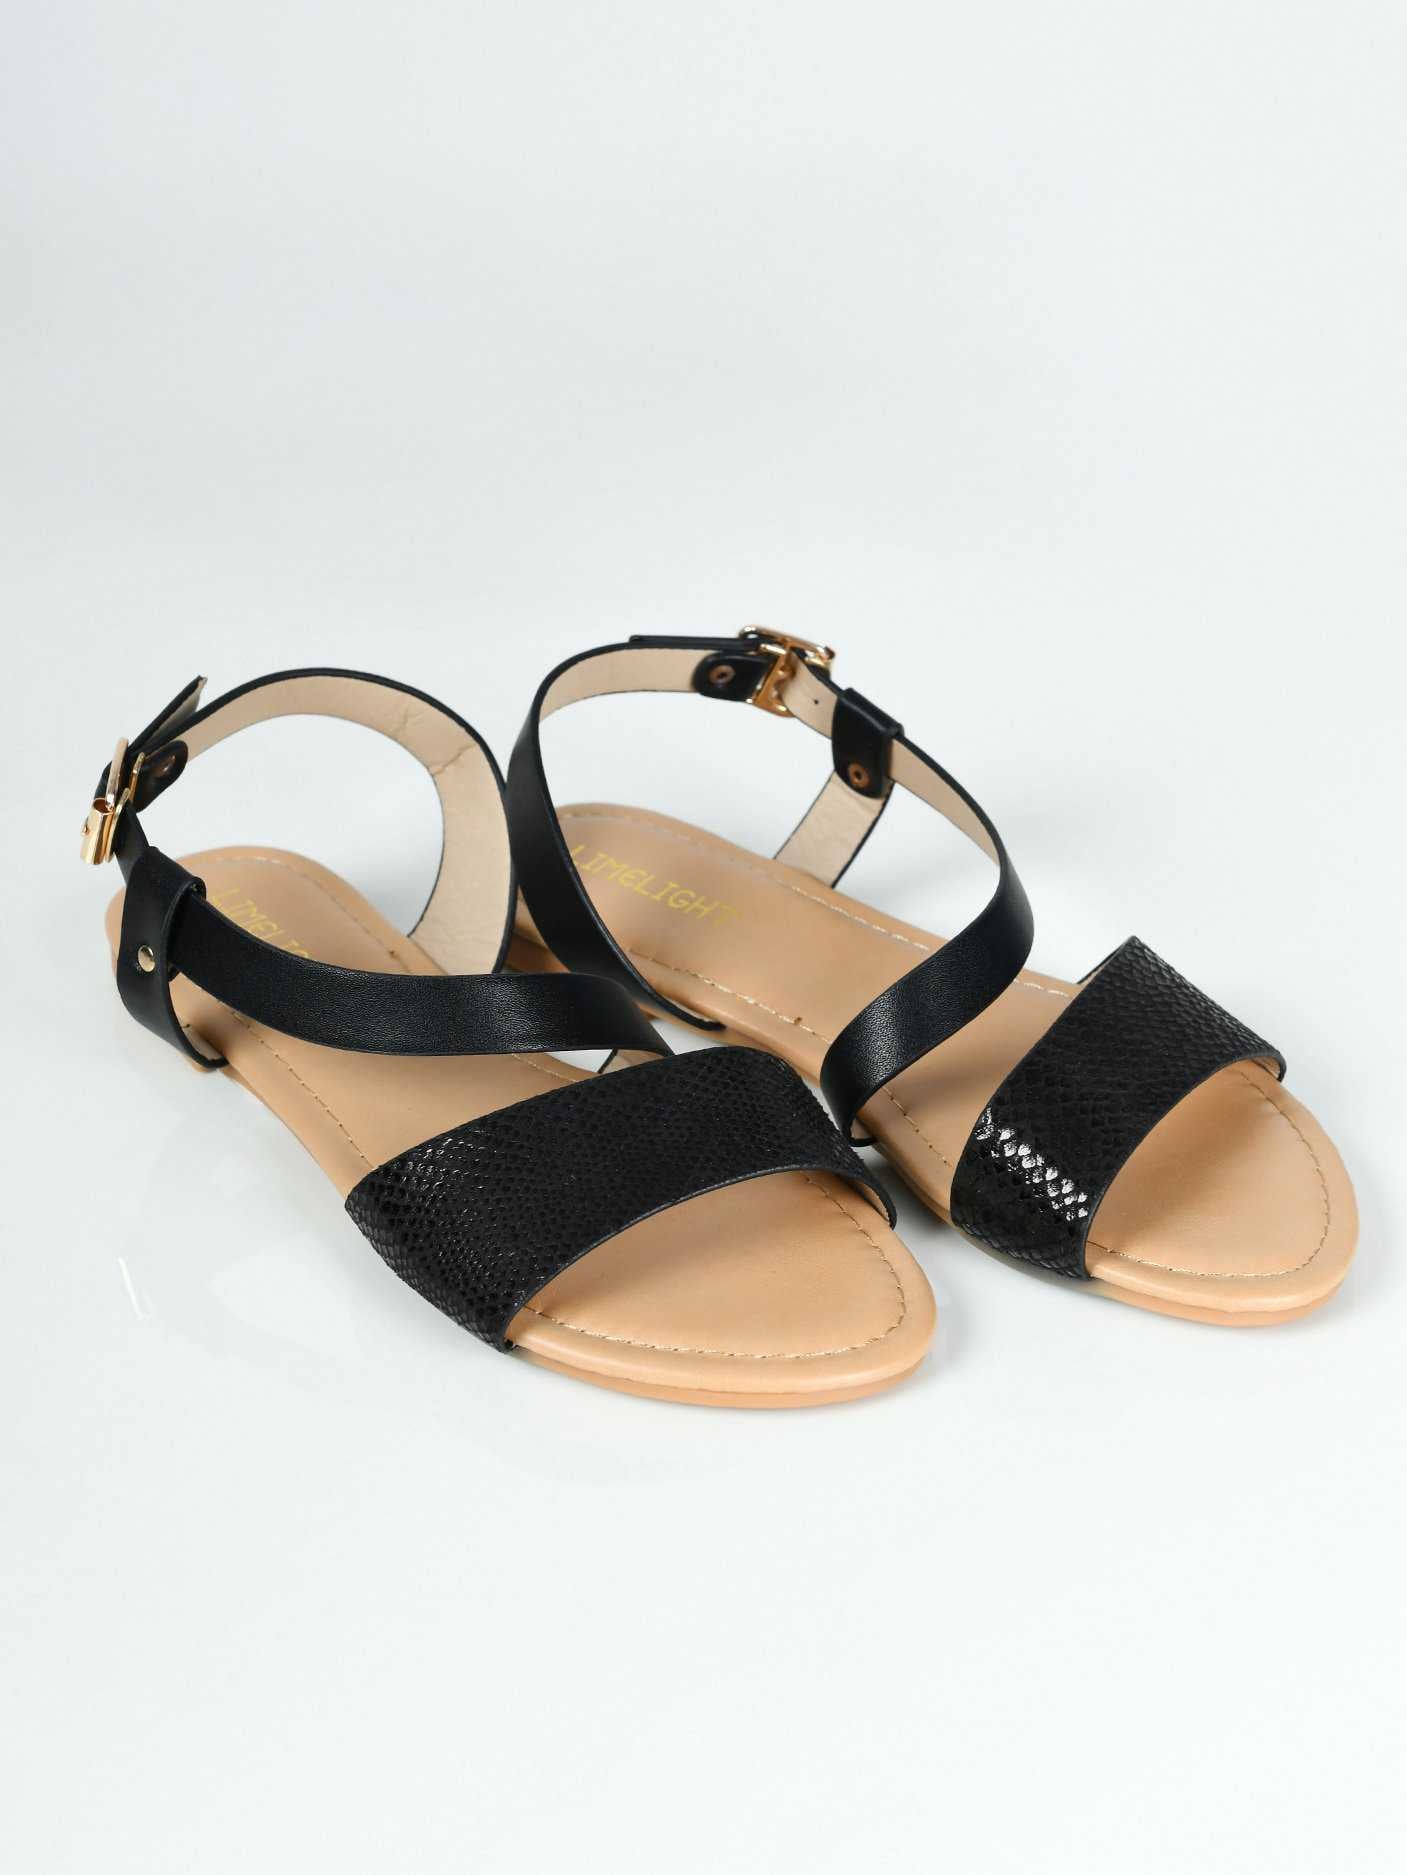 Limelight Textured Sandals - Black S0393-036-BLK 2019 | Limelight Sale 2020